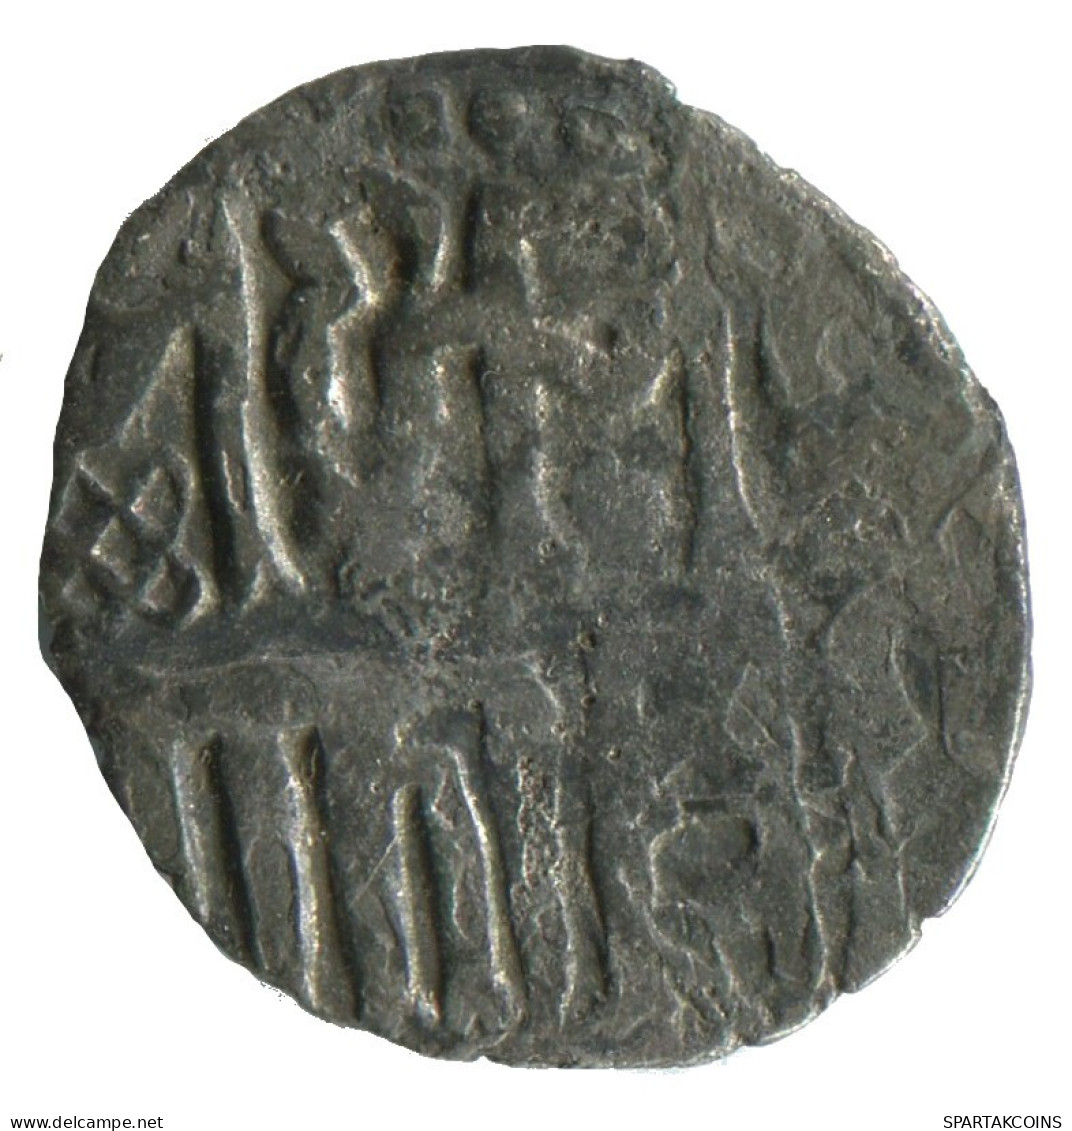 GOLDEN HORDE Silver Dirham Medieval Islamic Coin 1.4g/17mm #NNN2022.8.U.A - Islamiques